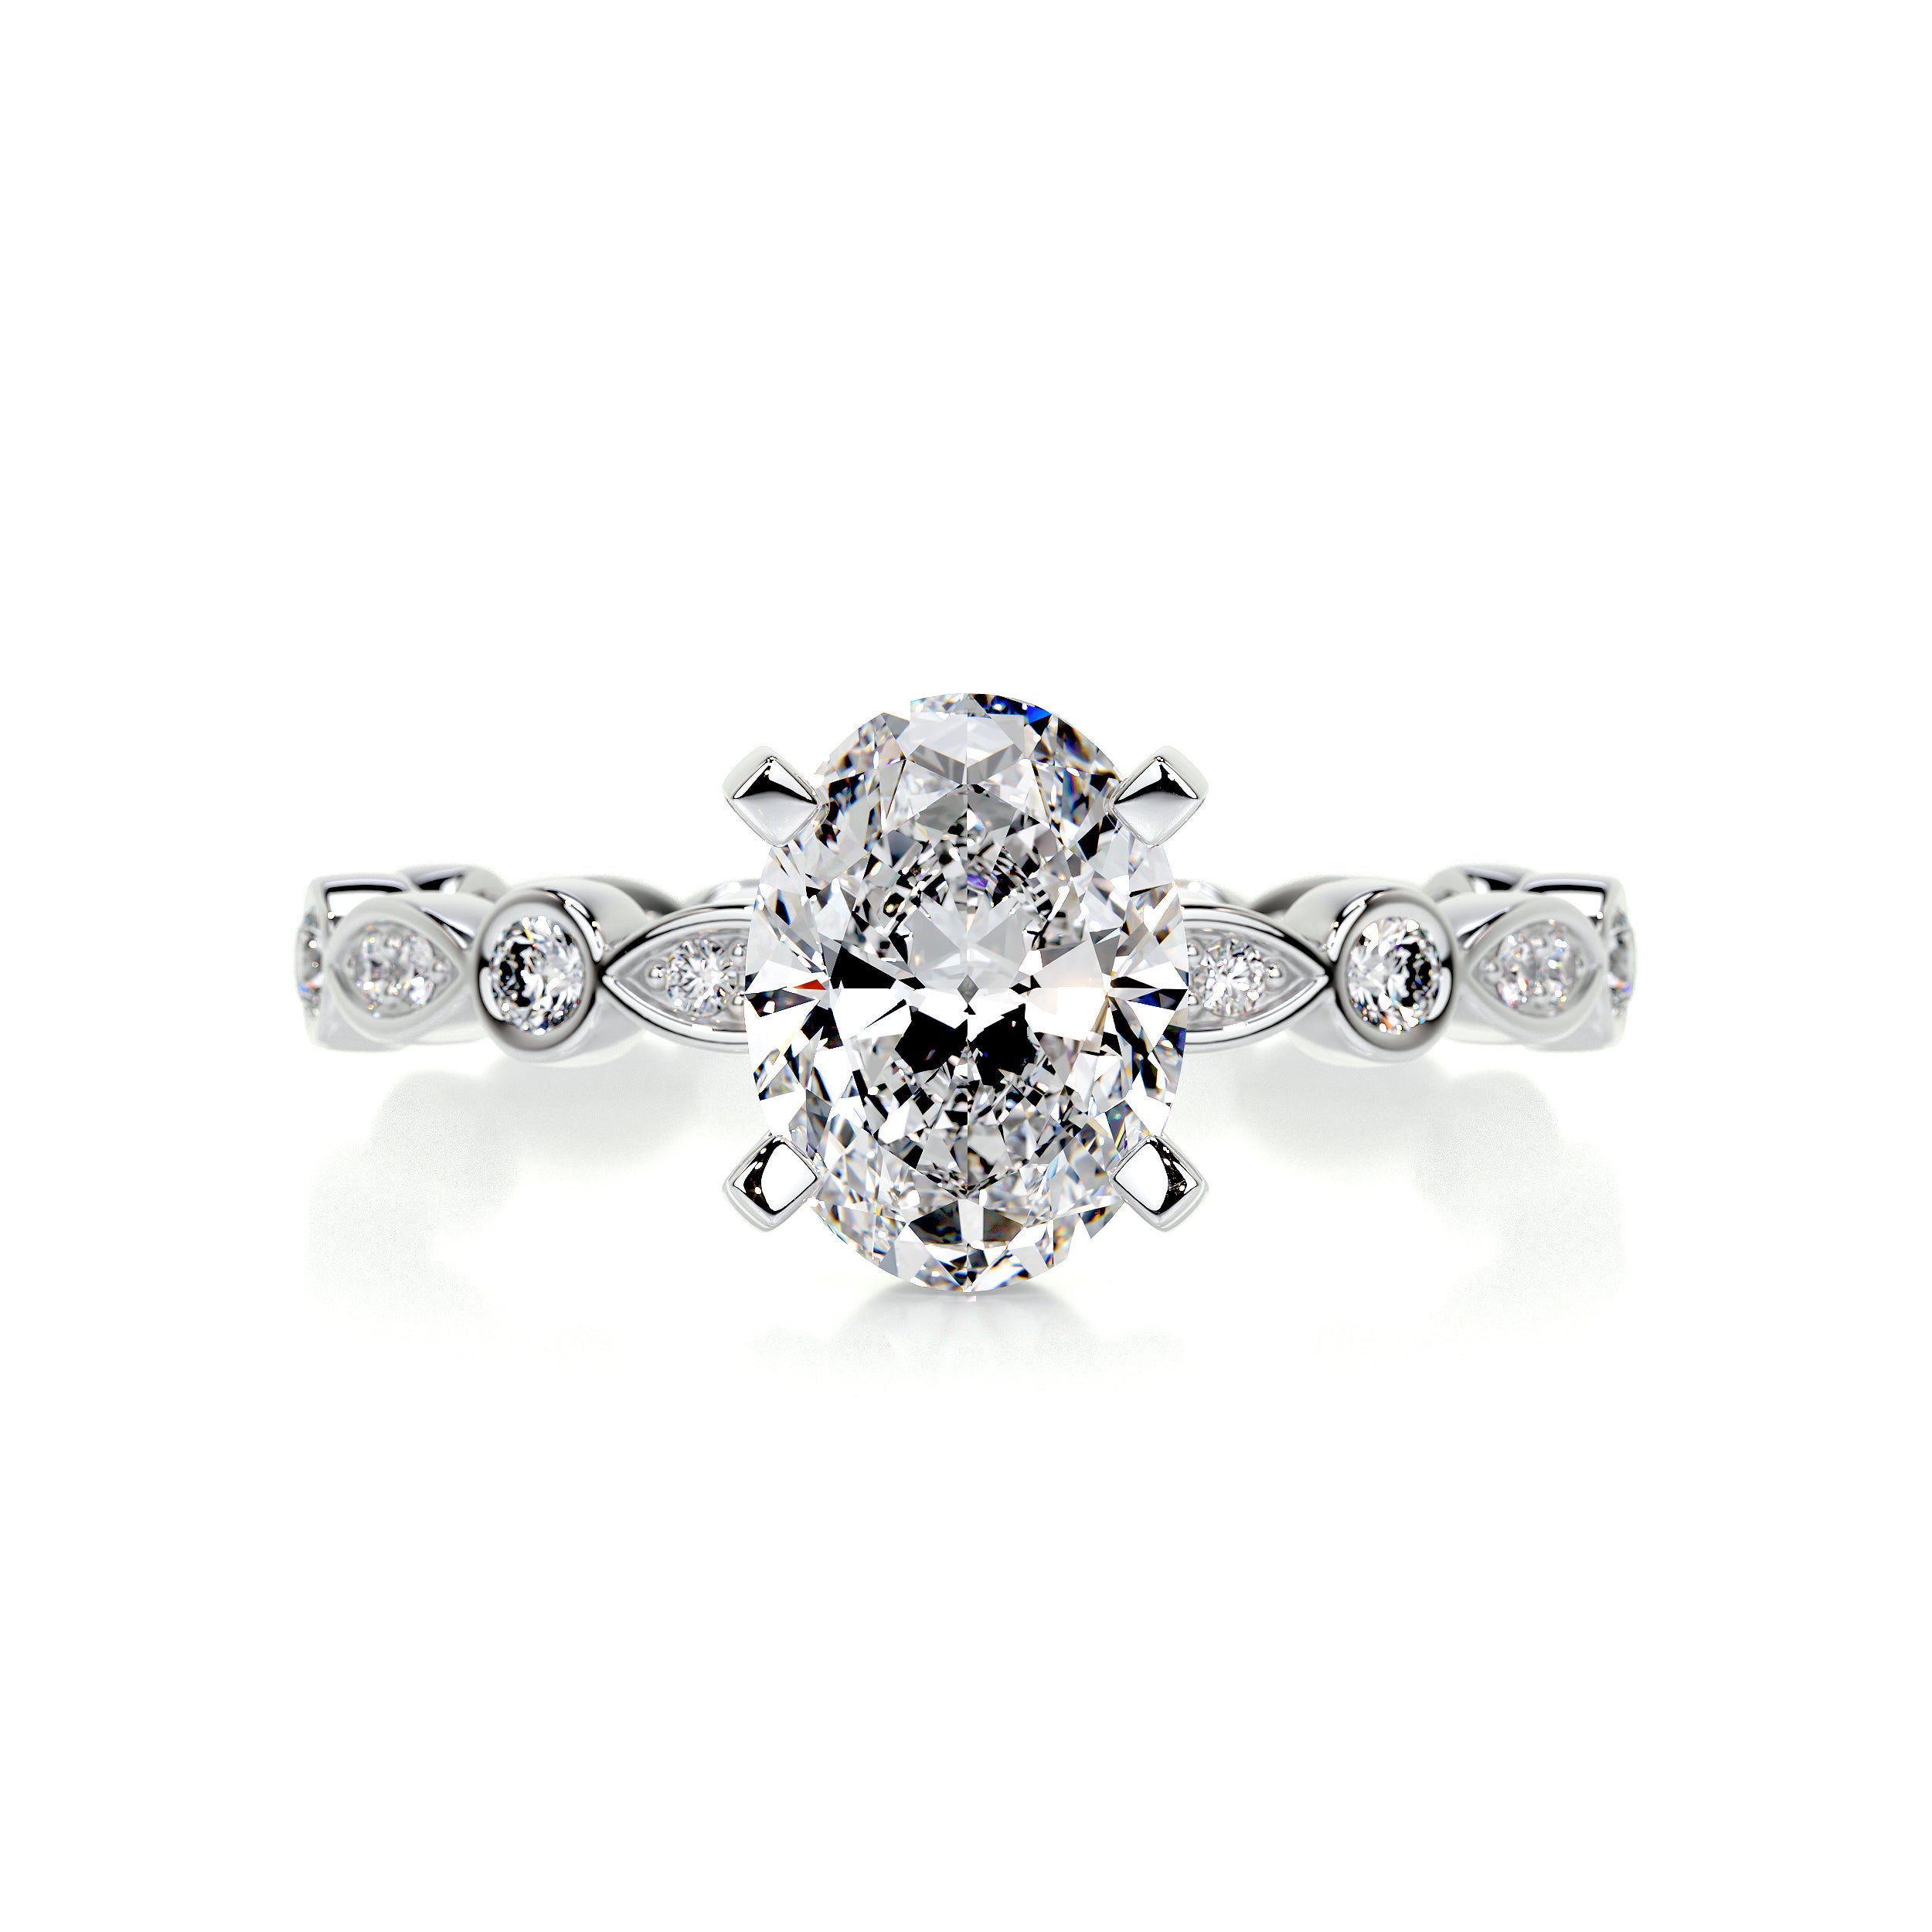 Amelia Diamond Engagement Ring   (2.5 Carat) -Platinum